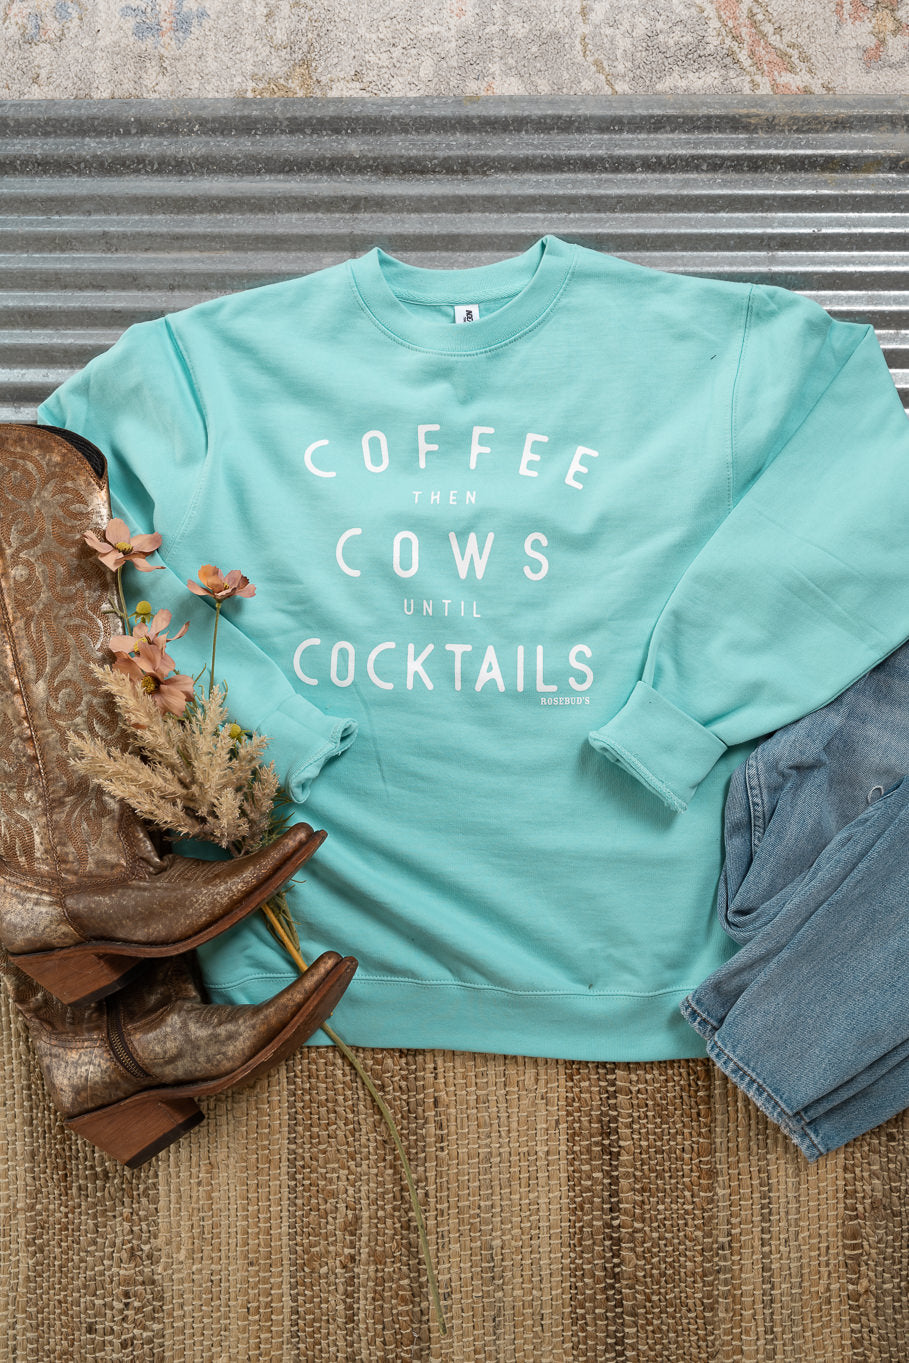 "Coffee then Cows until Cocktails" Crewneck | Sizes S - 3XL